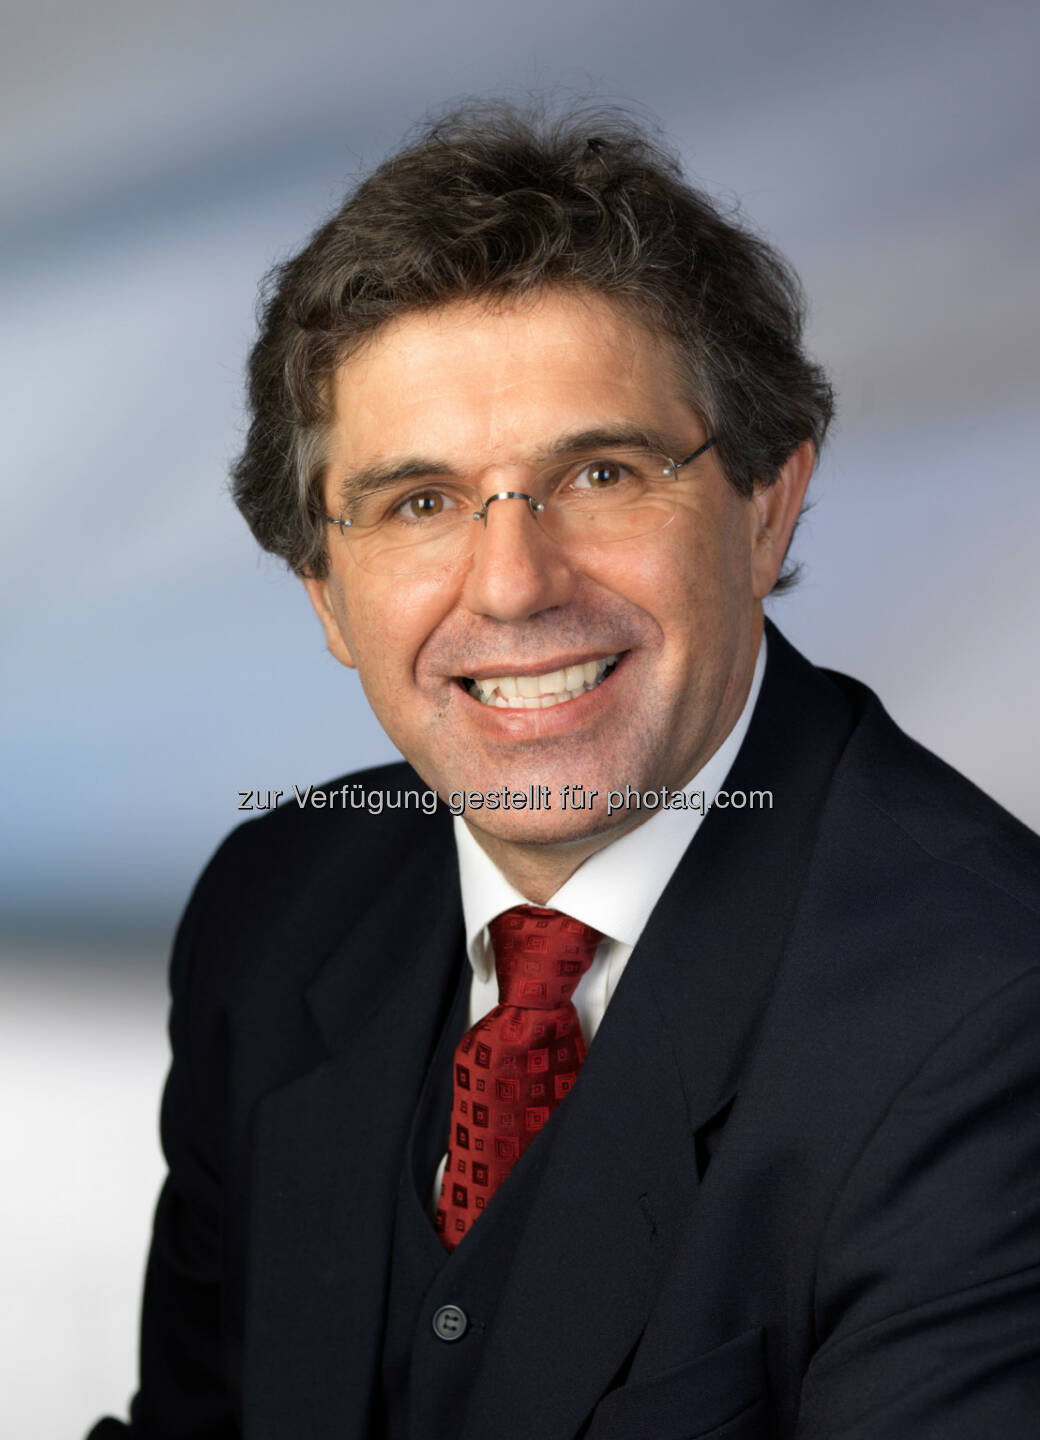 Gerhard Diendorfer, Leitung von Aldis, Prokurist der OVE Service GmbH